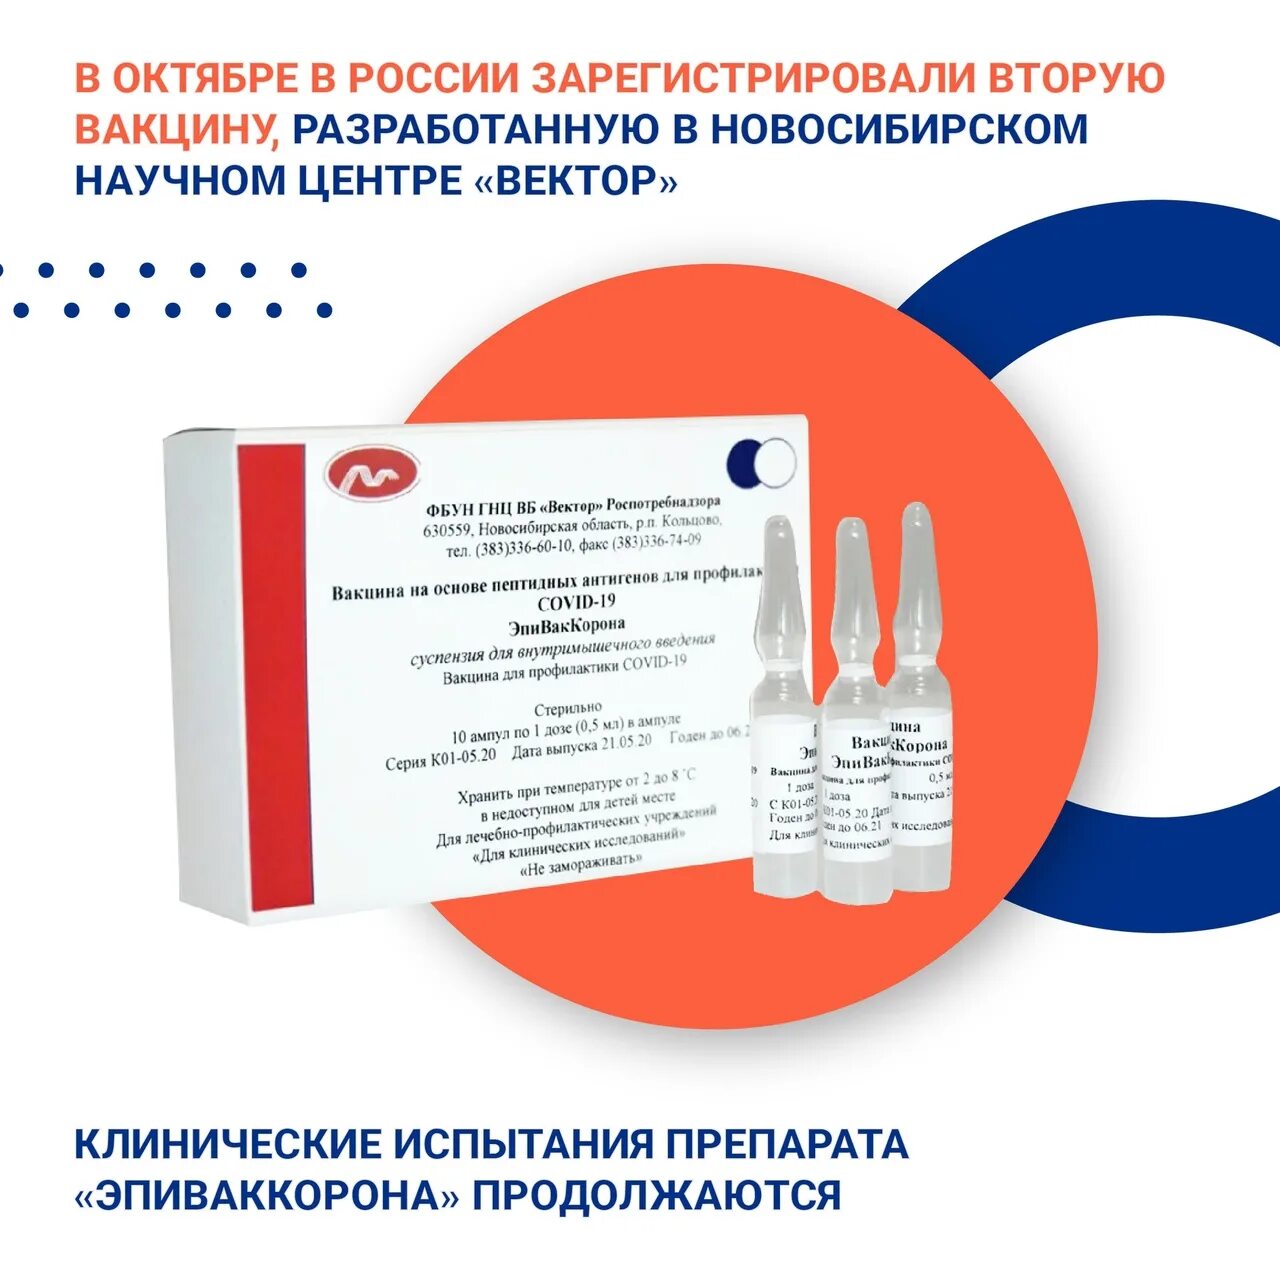 Вакцина россия название. Где сделать прививку. Однокомпонентная вакцина от коронавируса. Куда делают прививку от коронавируса. Название прививки от коронавируса в России.